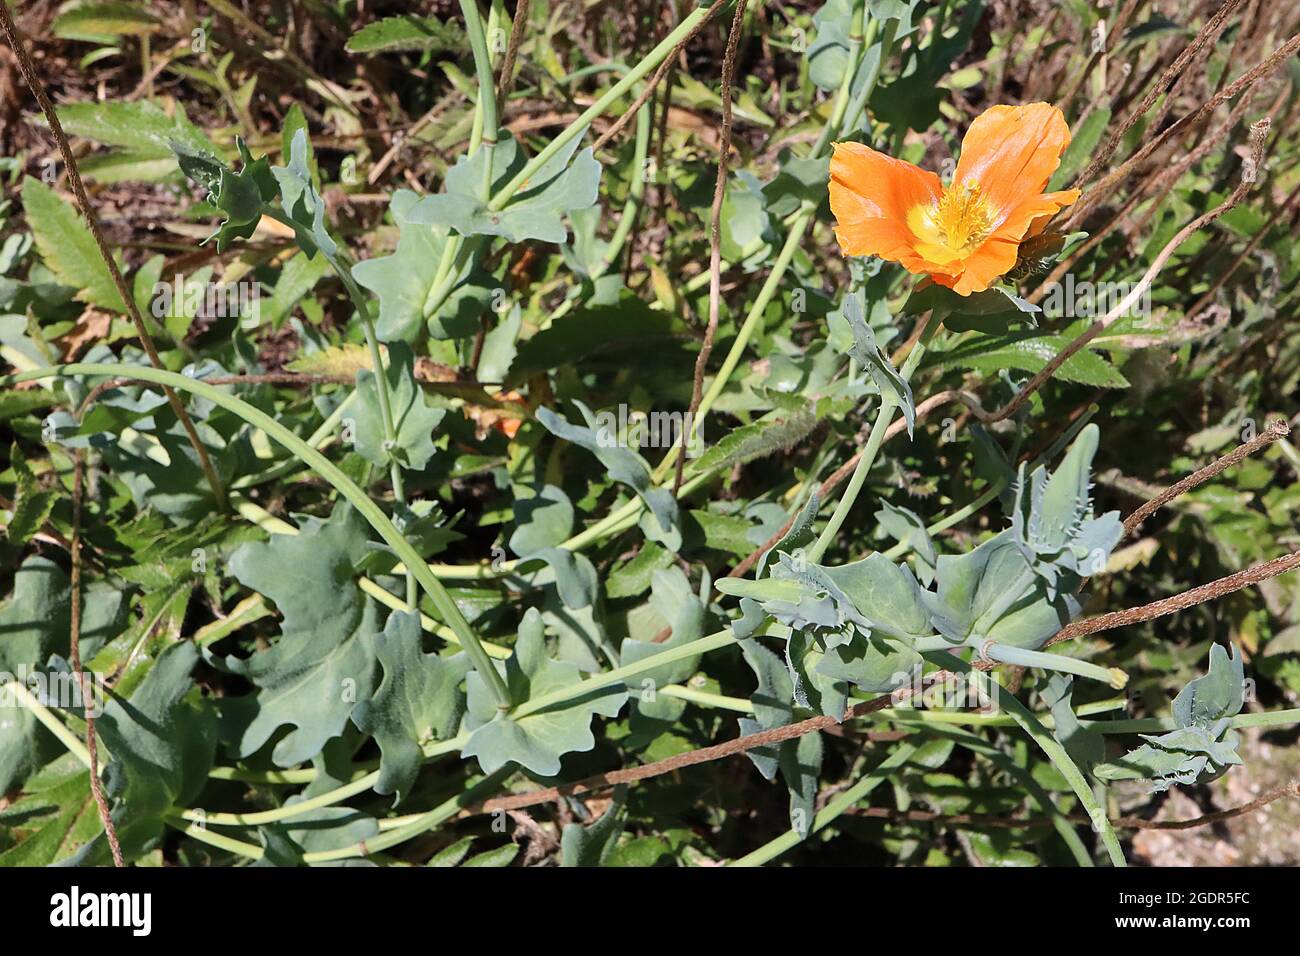 Glaucium corniculatum ‘Arancio bruciato’ Poppy con cornici rosse bruciato Arancio – fiori arancioni con centro giallo, capsule di semi a forma di corno pelose, luglio, Regno Unito Foto Stock